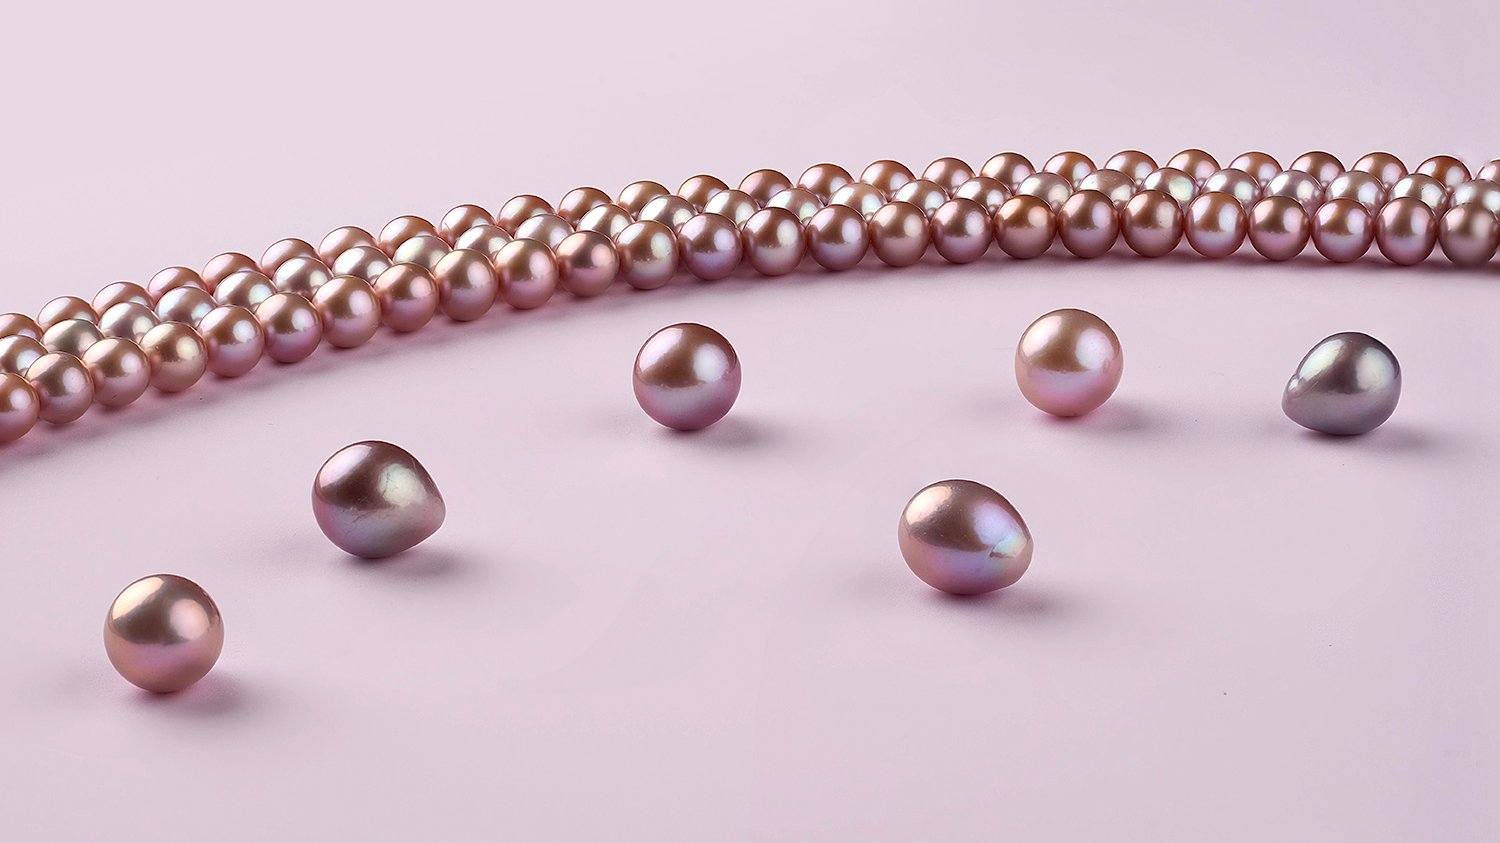 Unique pearl colors